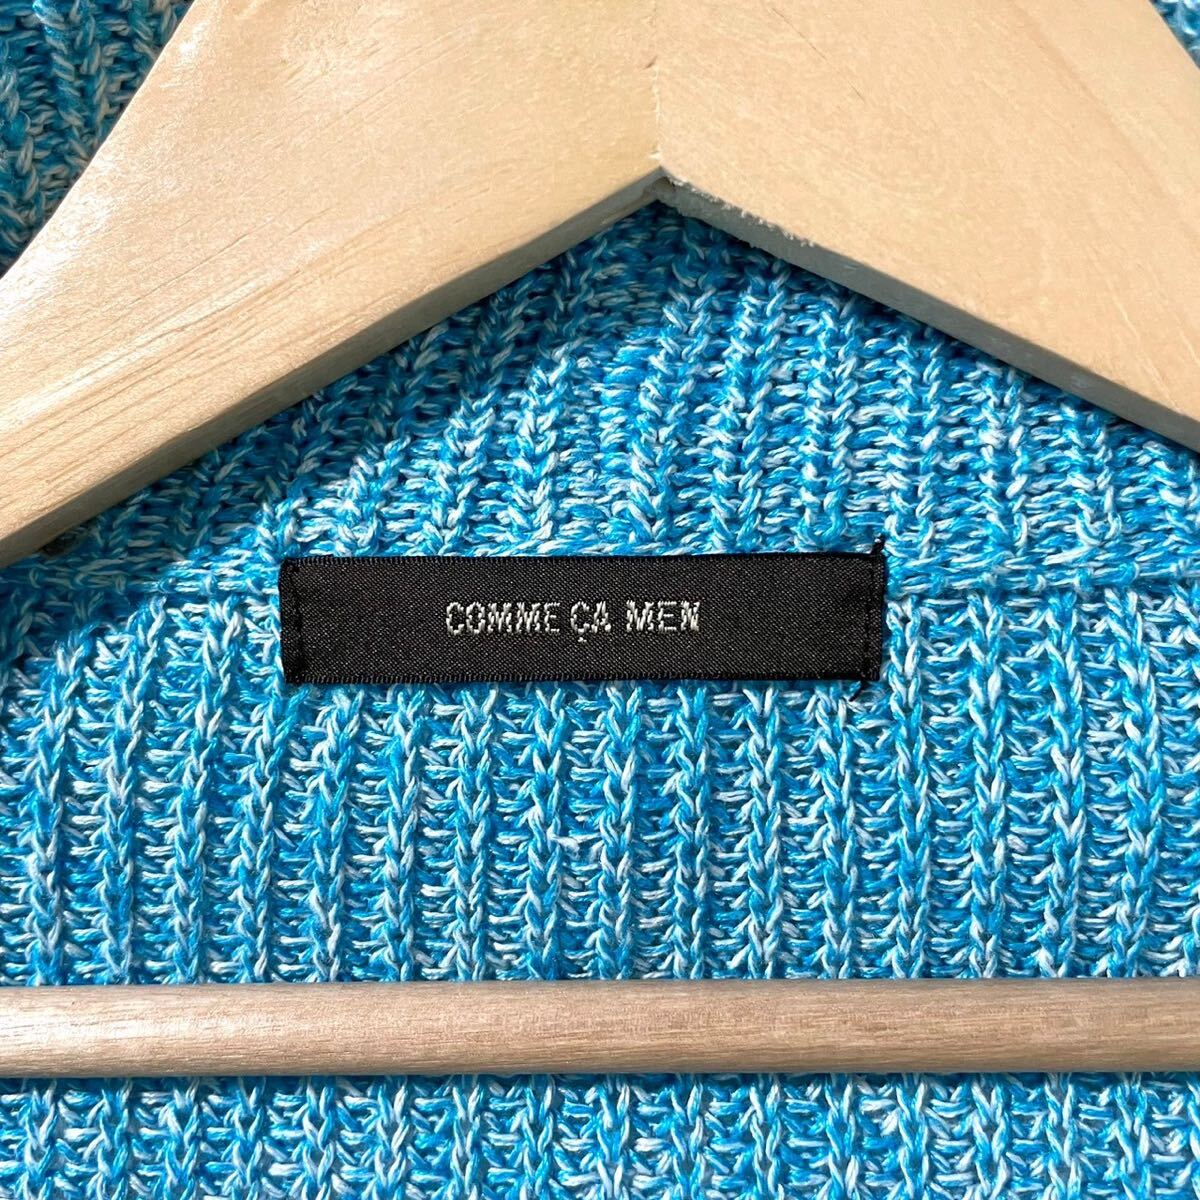  прекрасный товар / редкий цвет Comme Ca men COMME CA MEN вязаный жакет кардиган linen100% лен шаль цвет синий blue свитер весна лето осень 